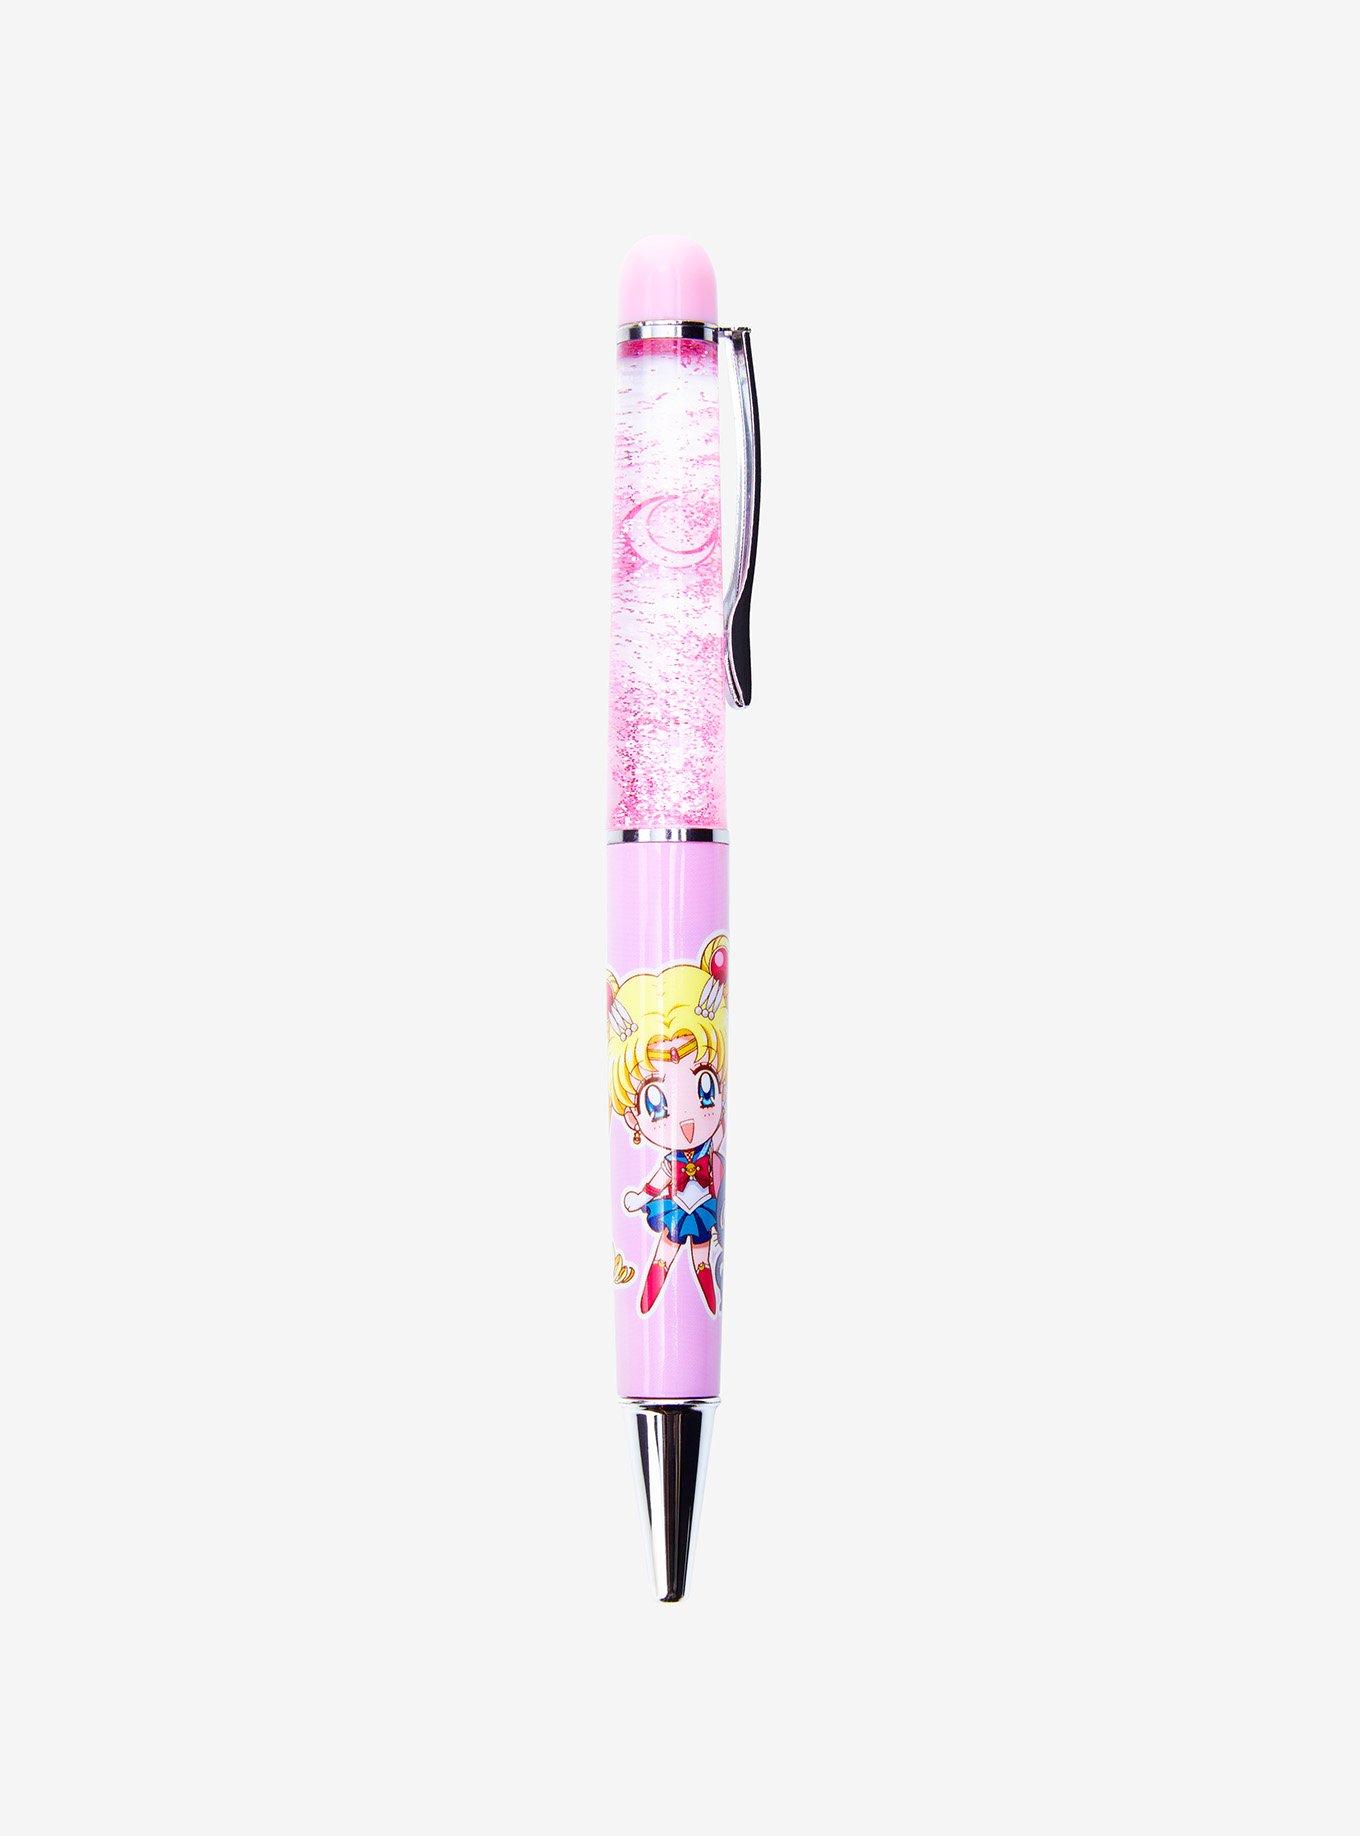 Pink Glitter Pens – Winnies Wonders Creations